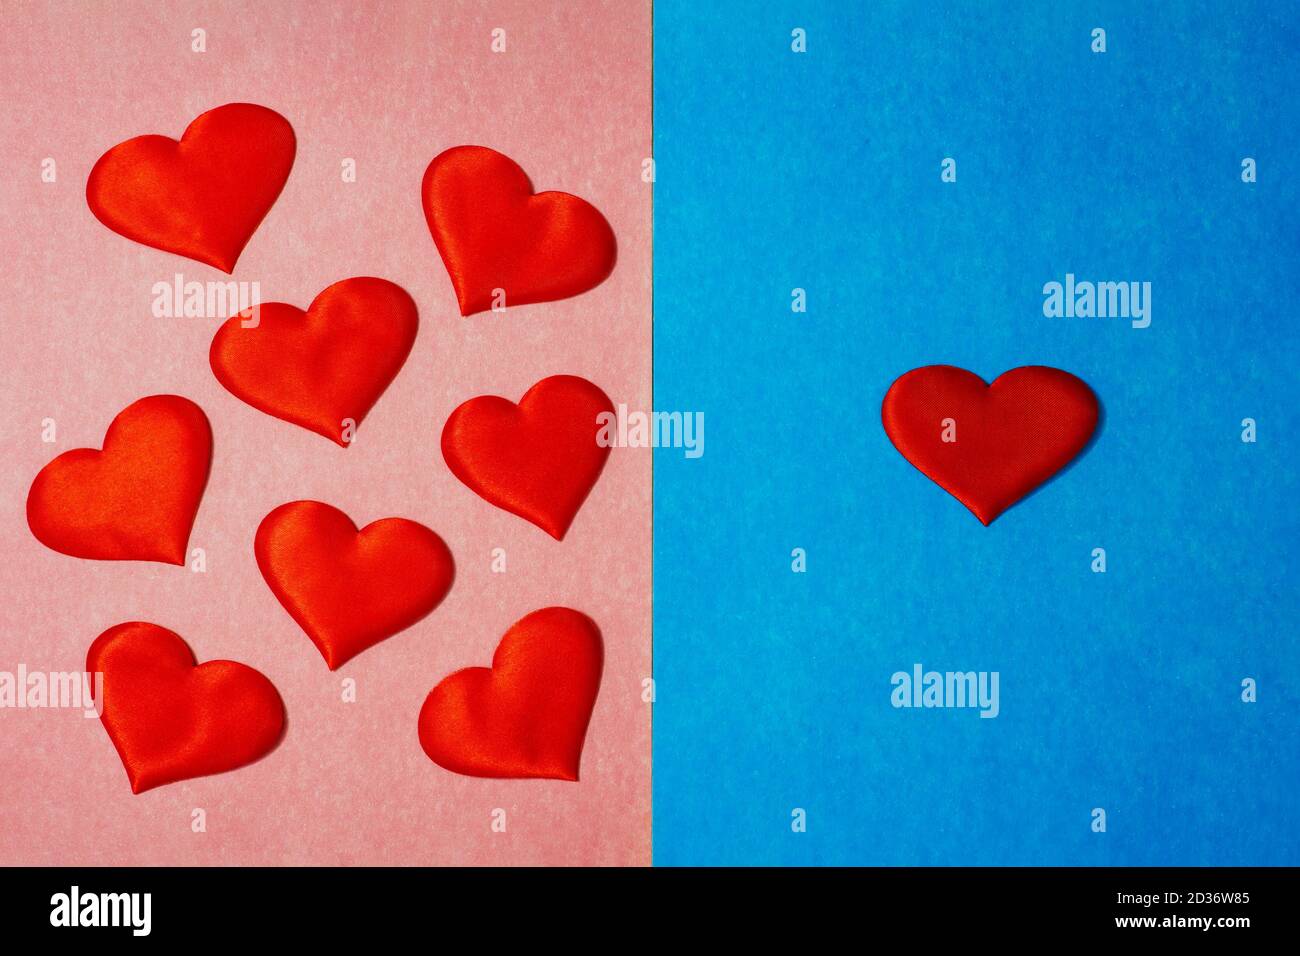 Beaucoup de coeurs en couleur rose côté et un coeur en couleur bleue côté arrière-plan. Copier l'espace, beaucoup de femmes un homme concept Banque D'Images